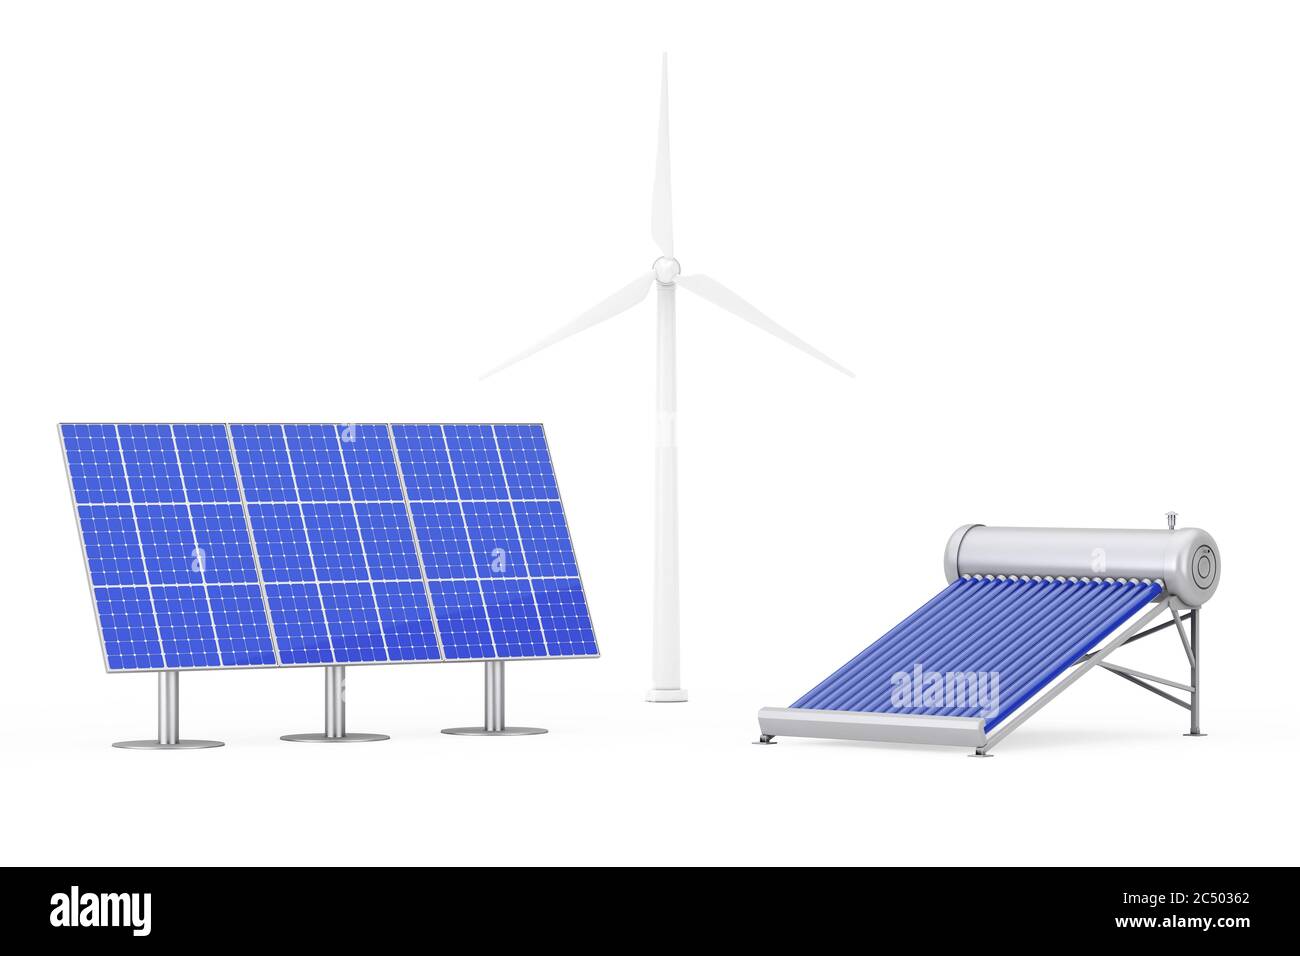 Panneaux solaires bleus, moulins à vent et panneau de chauffe-eau sur fond blanc. Rendu 3d. Banque D'Images